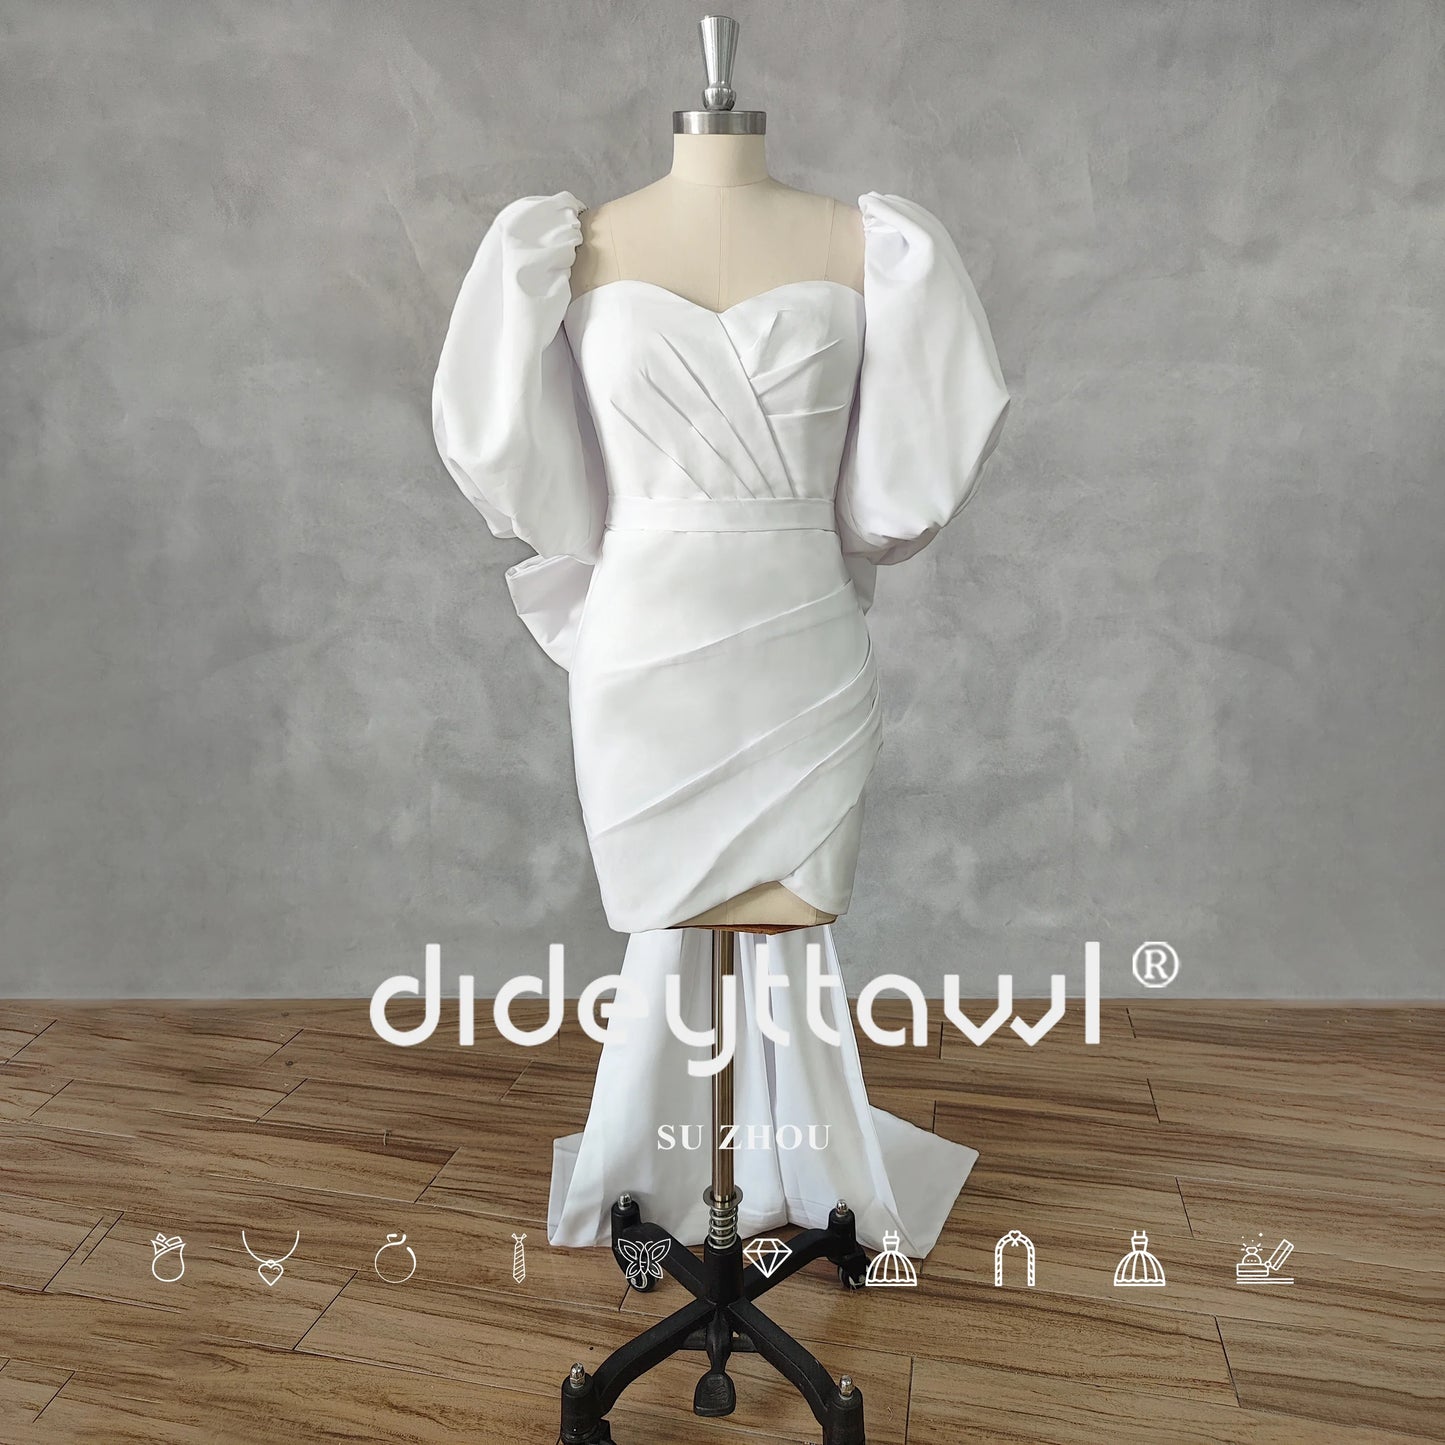 Robe de mariée courte plissée, manches bouffantes, avec nœud, gaine au-dessus du genou, Mini robe de mariée sur mesure